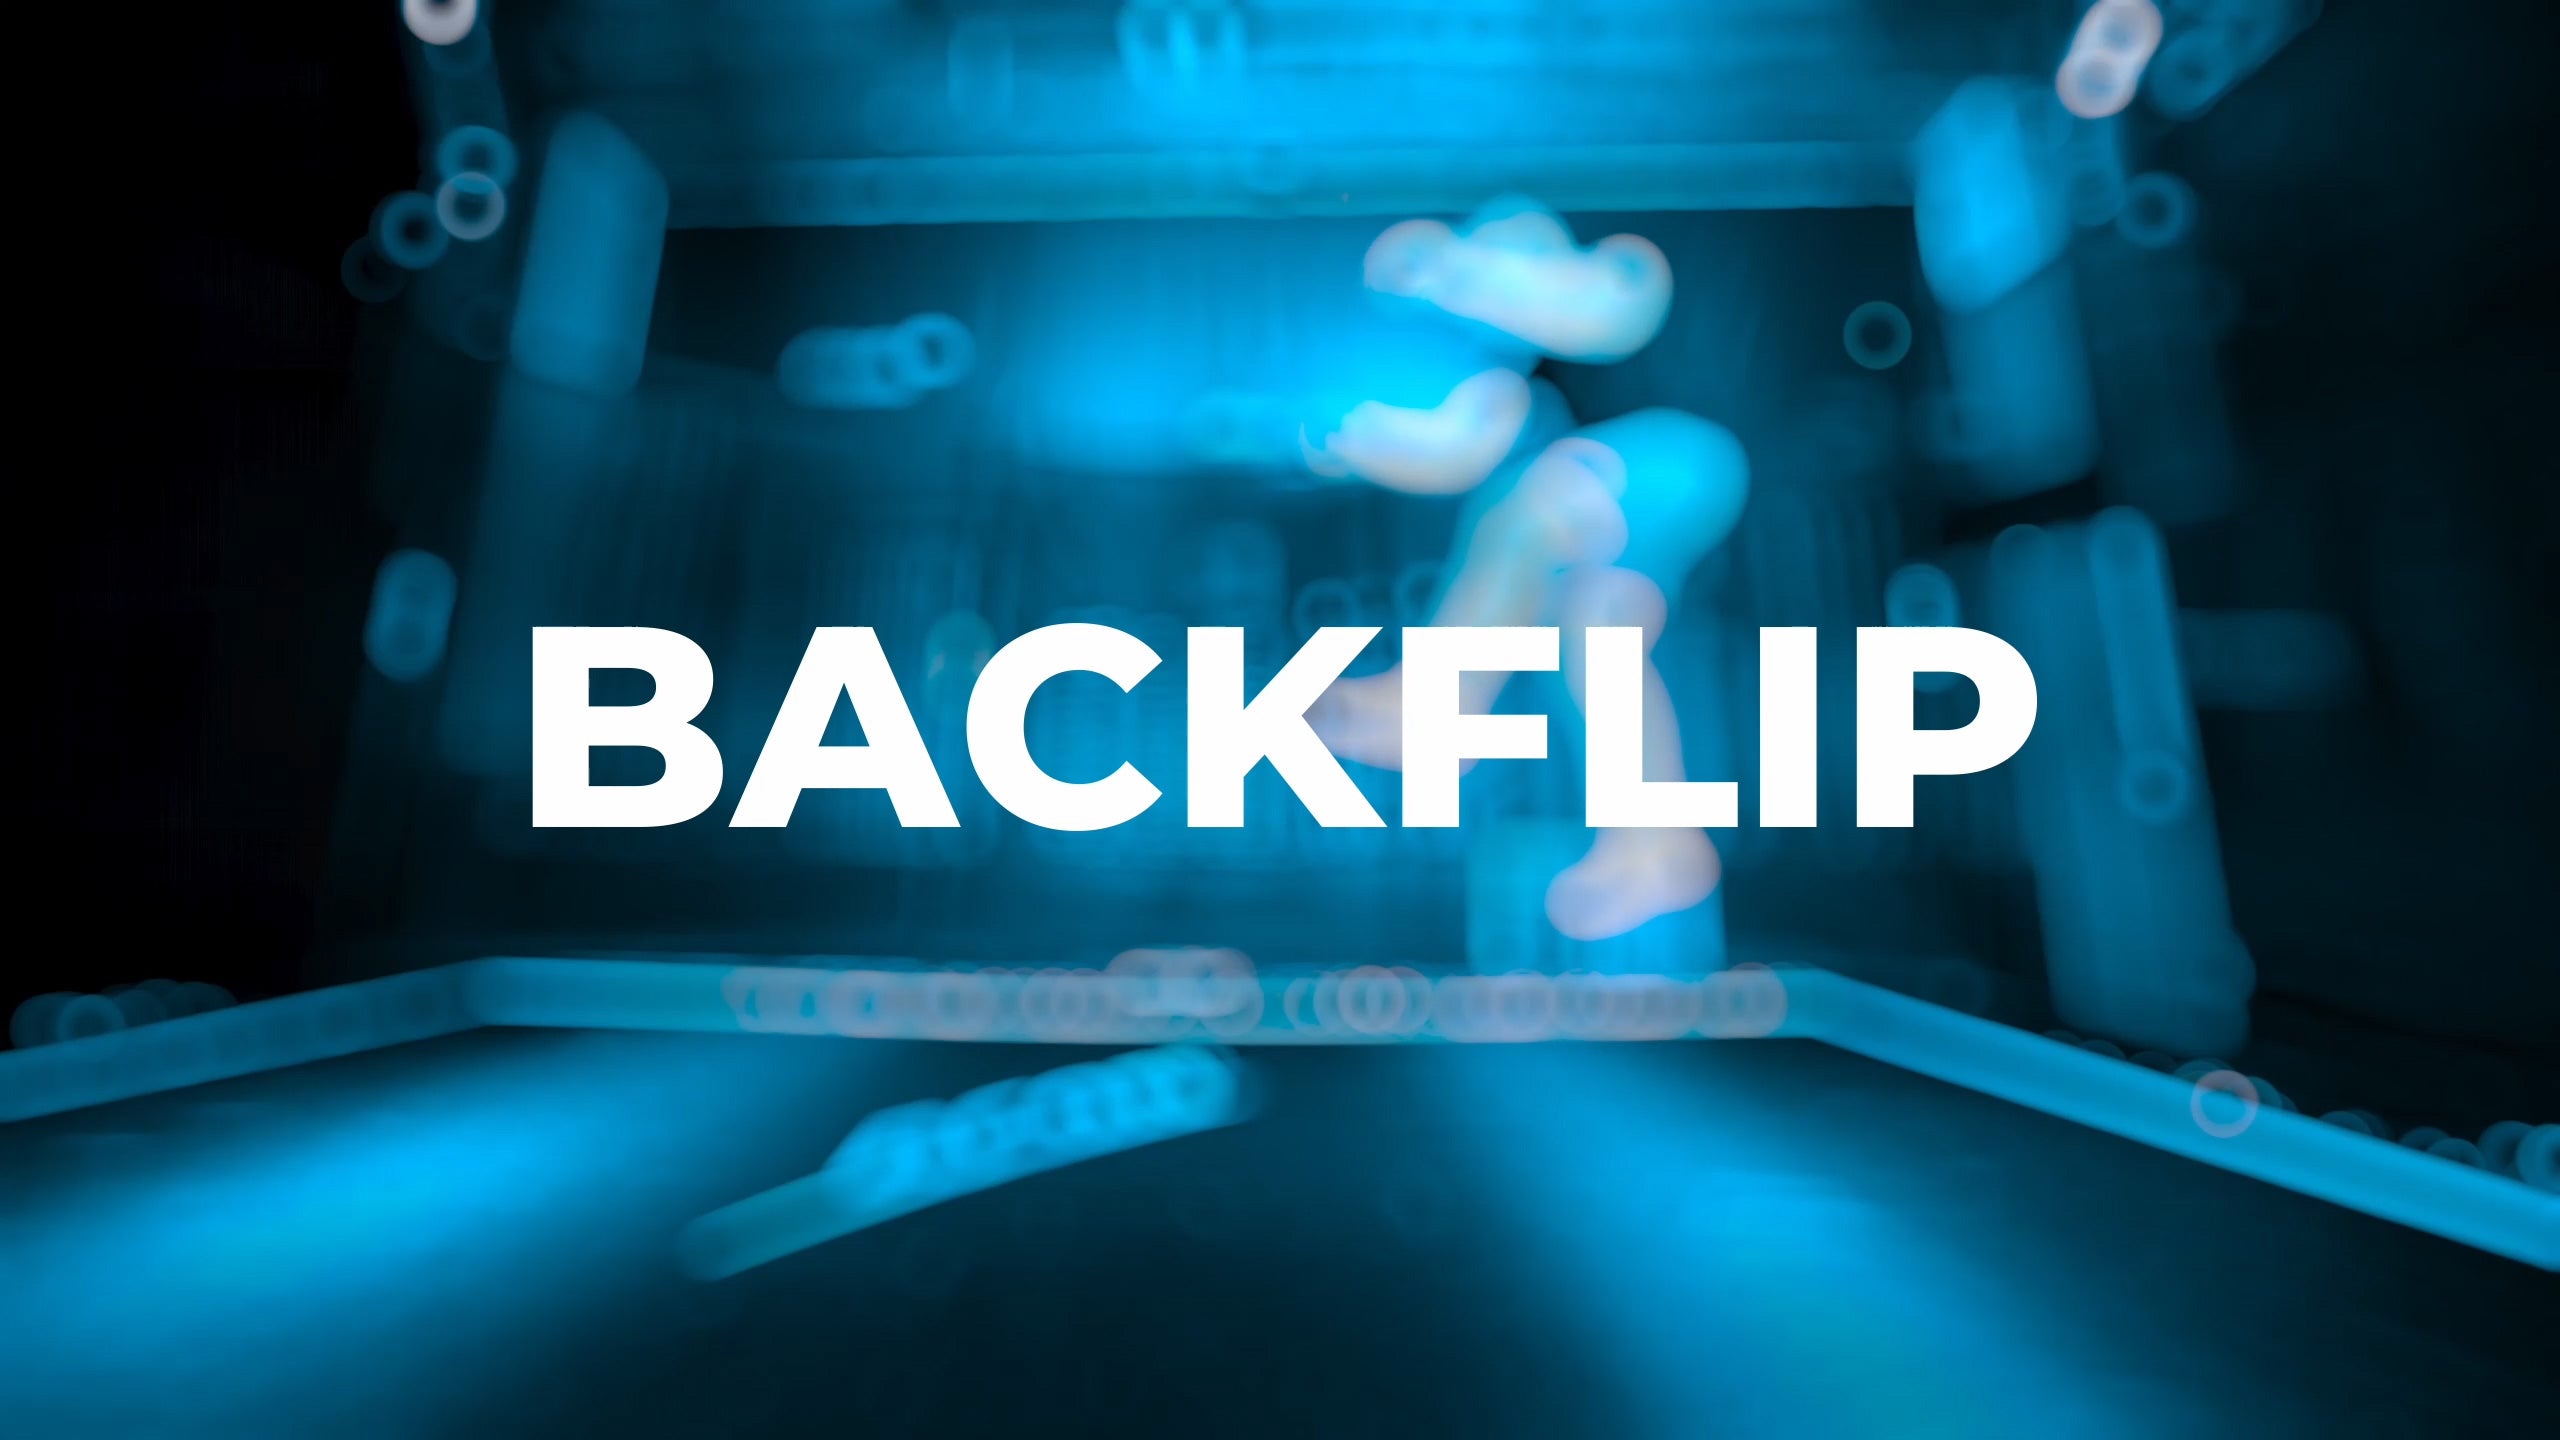 Backflip tutorial - placeholder image